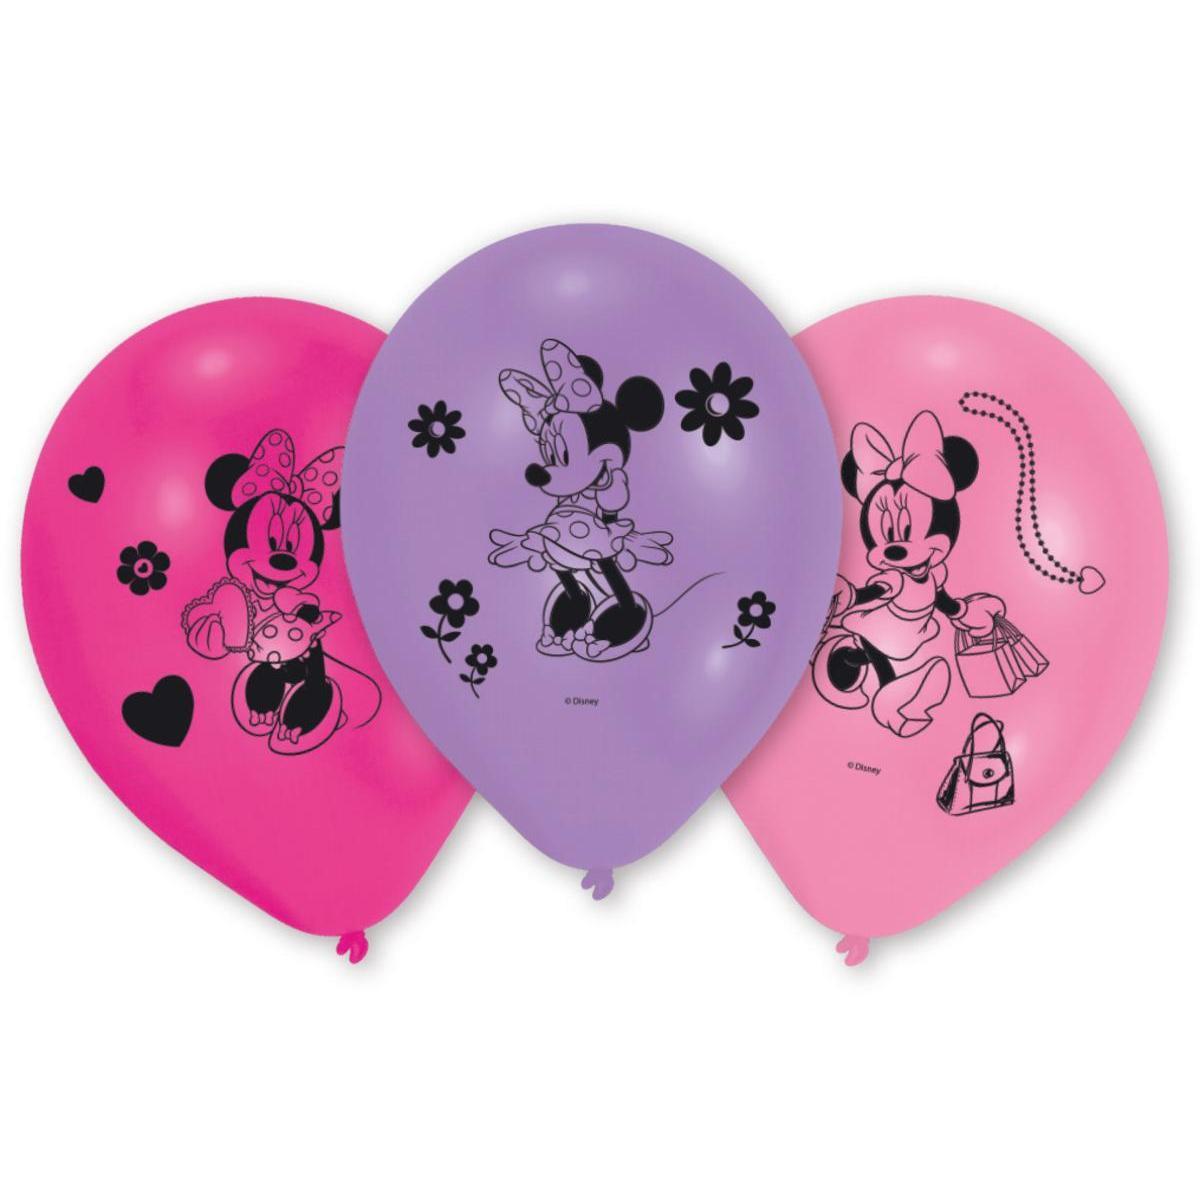 10 ballons Minnie